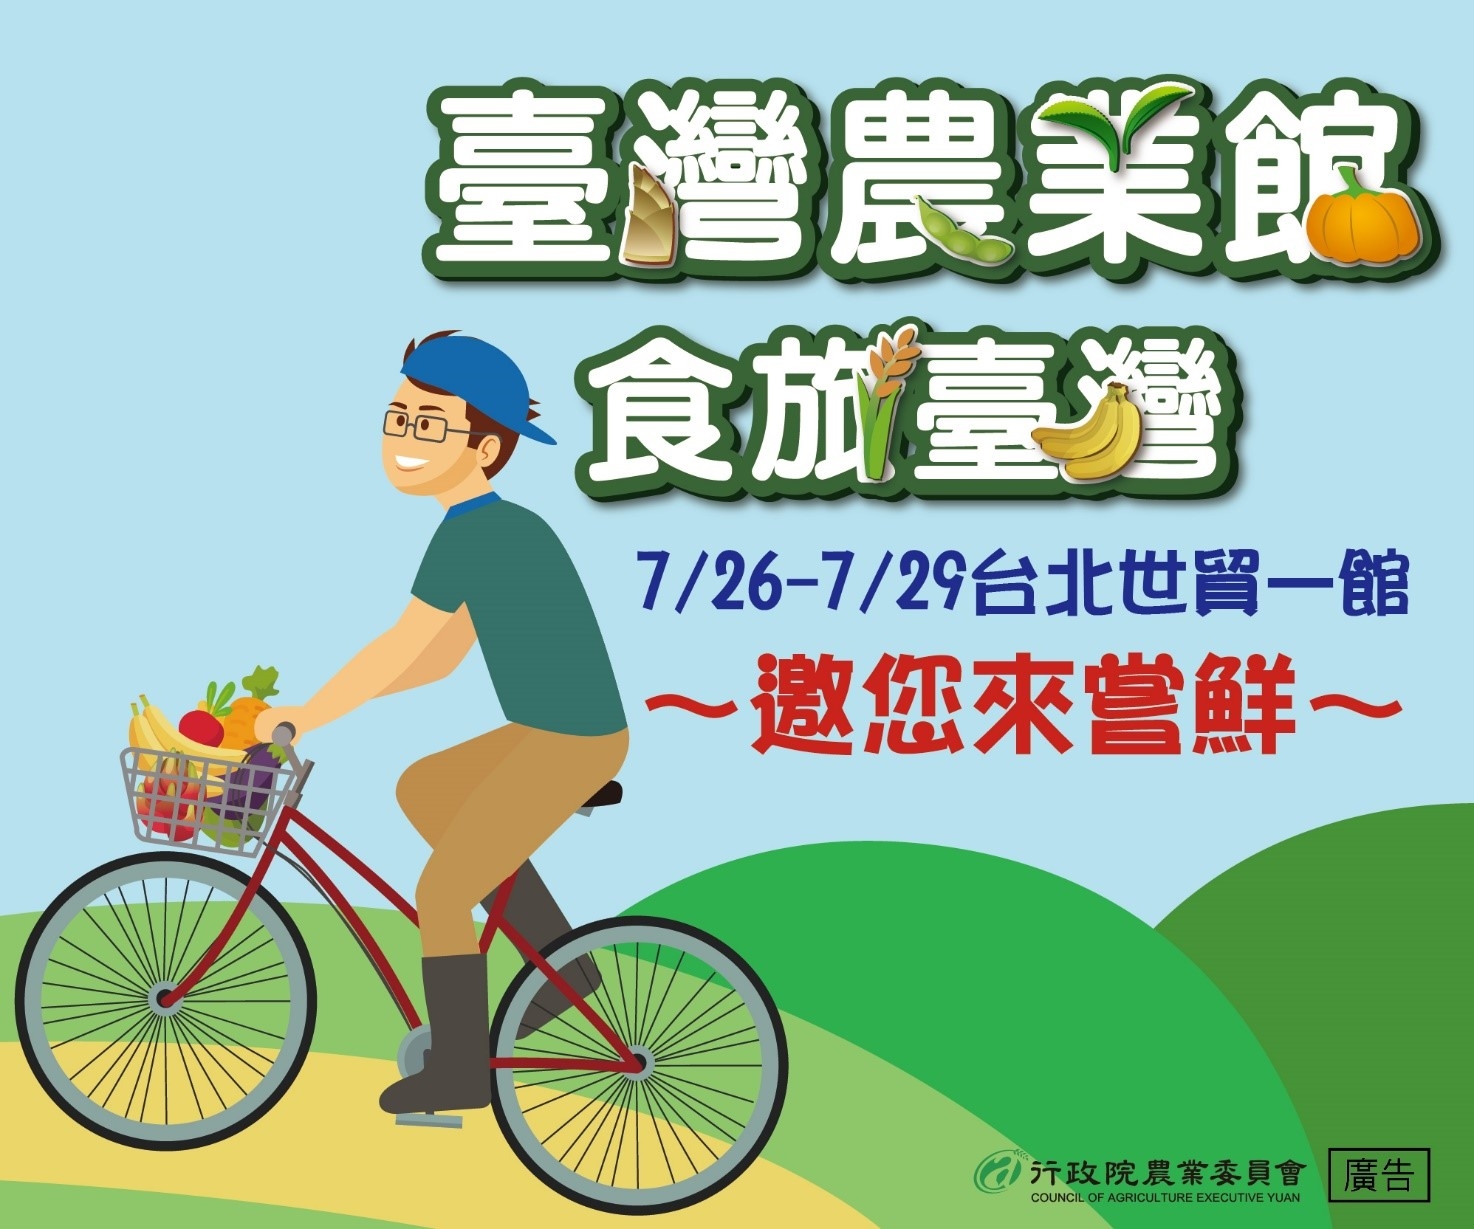 2019臺灣美食展-臺灣農業館-一起到農村探尋
臺灣農產的「食力」